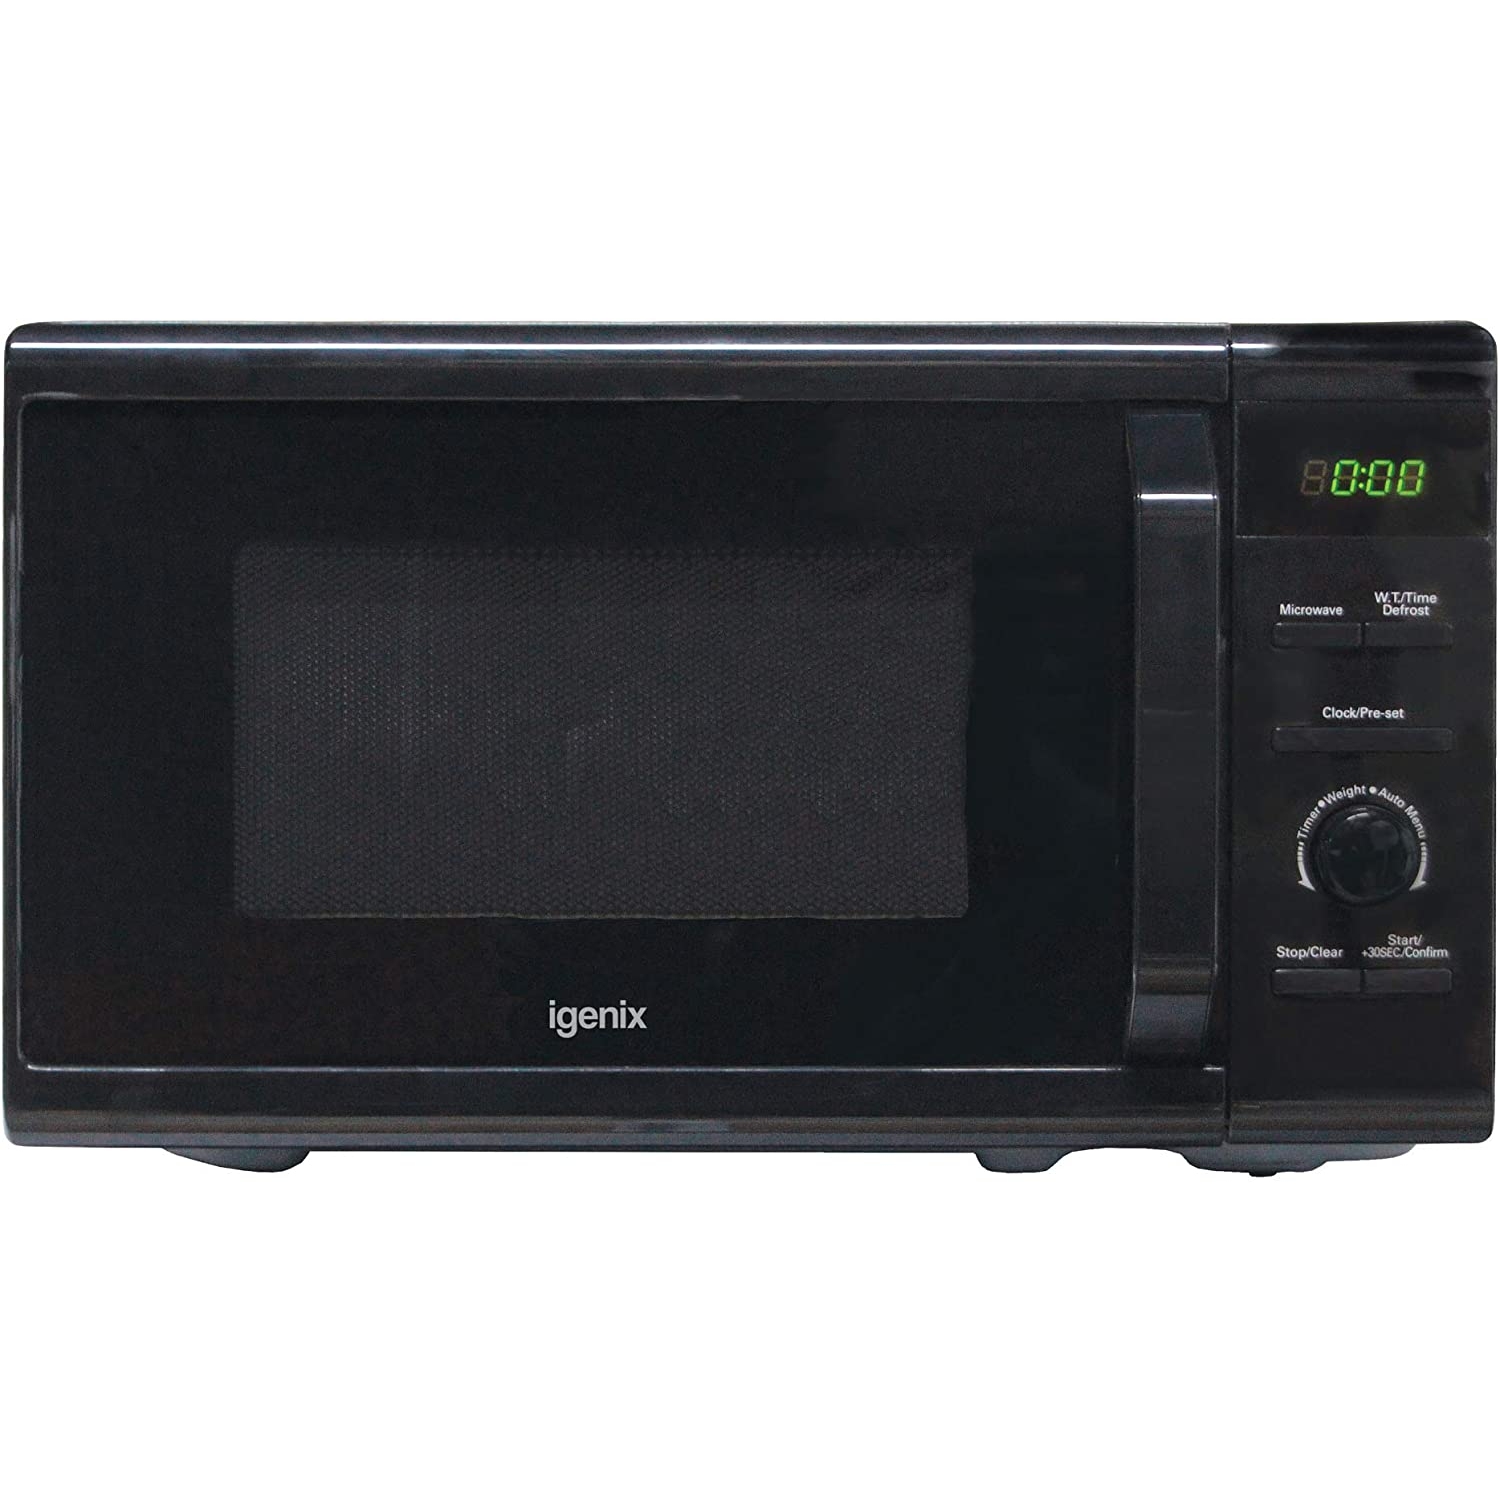 Igenix 20 Ltr Digital Microwave - 0